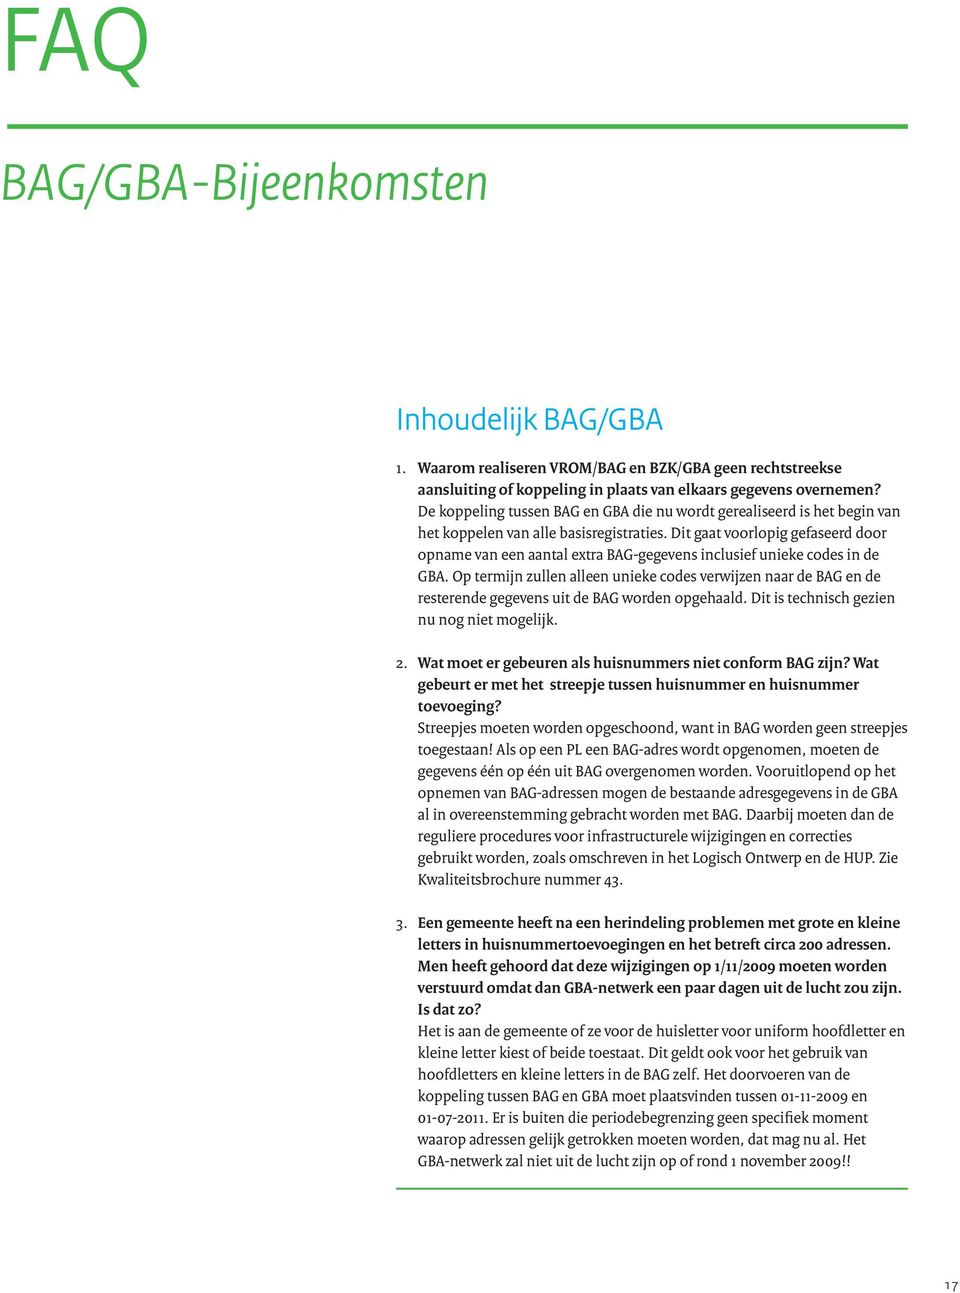 Dit gaat voorlopig gefaseerd door opname van een aantal extra BAG-gegevens inclusief unieke codes in de GBA.